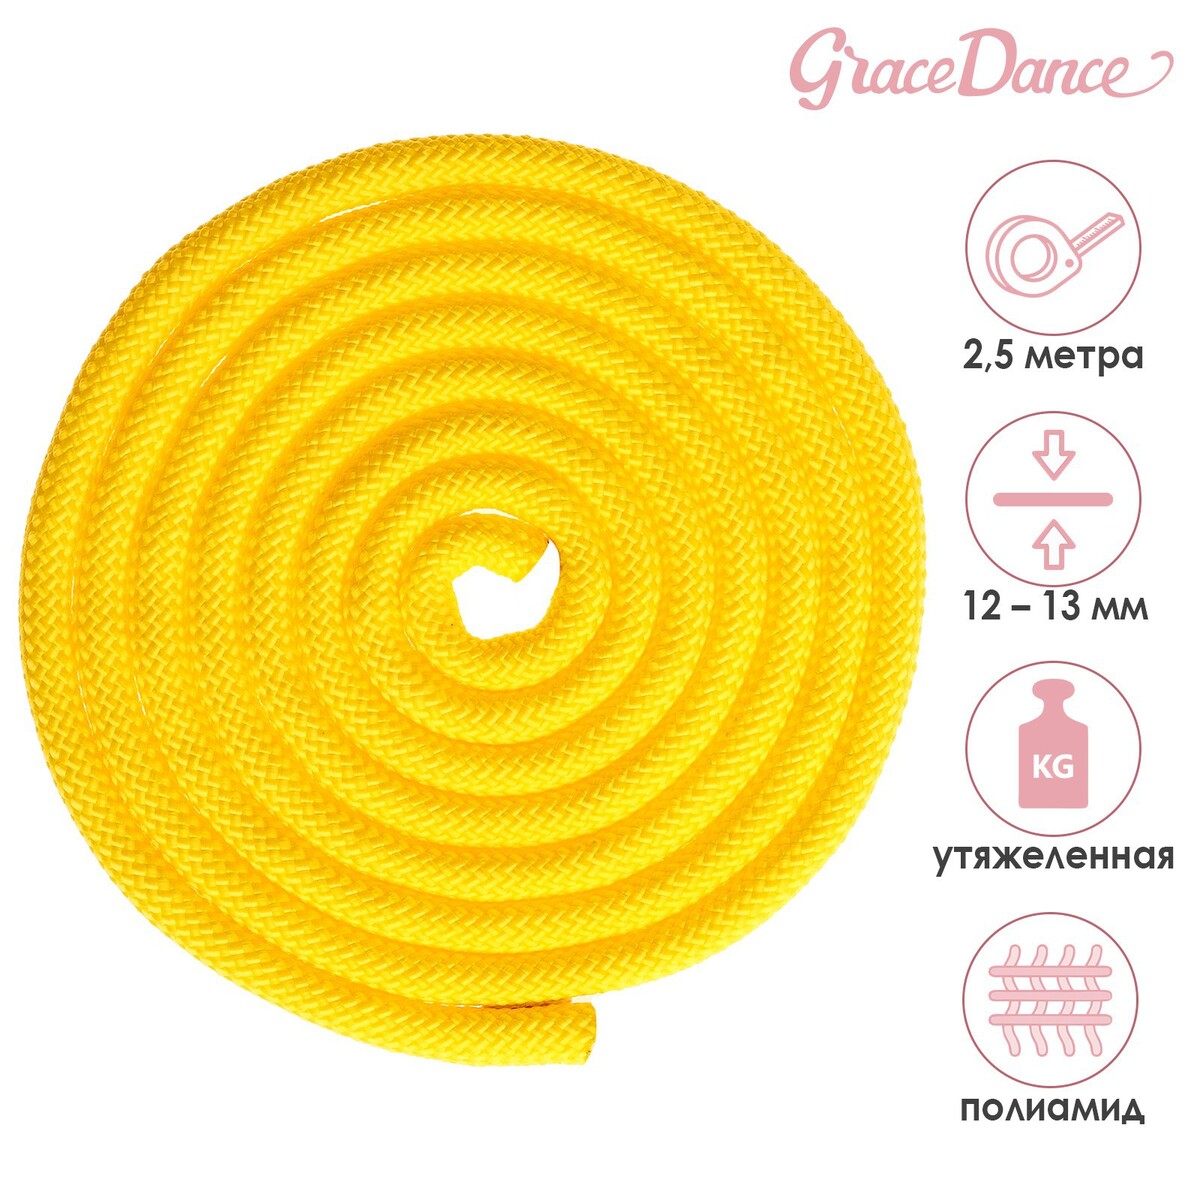 Скакалка для художественной гимнастики утяжеленная grace dance, 2,5 м, цвет желтый